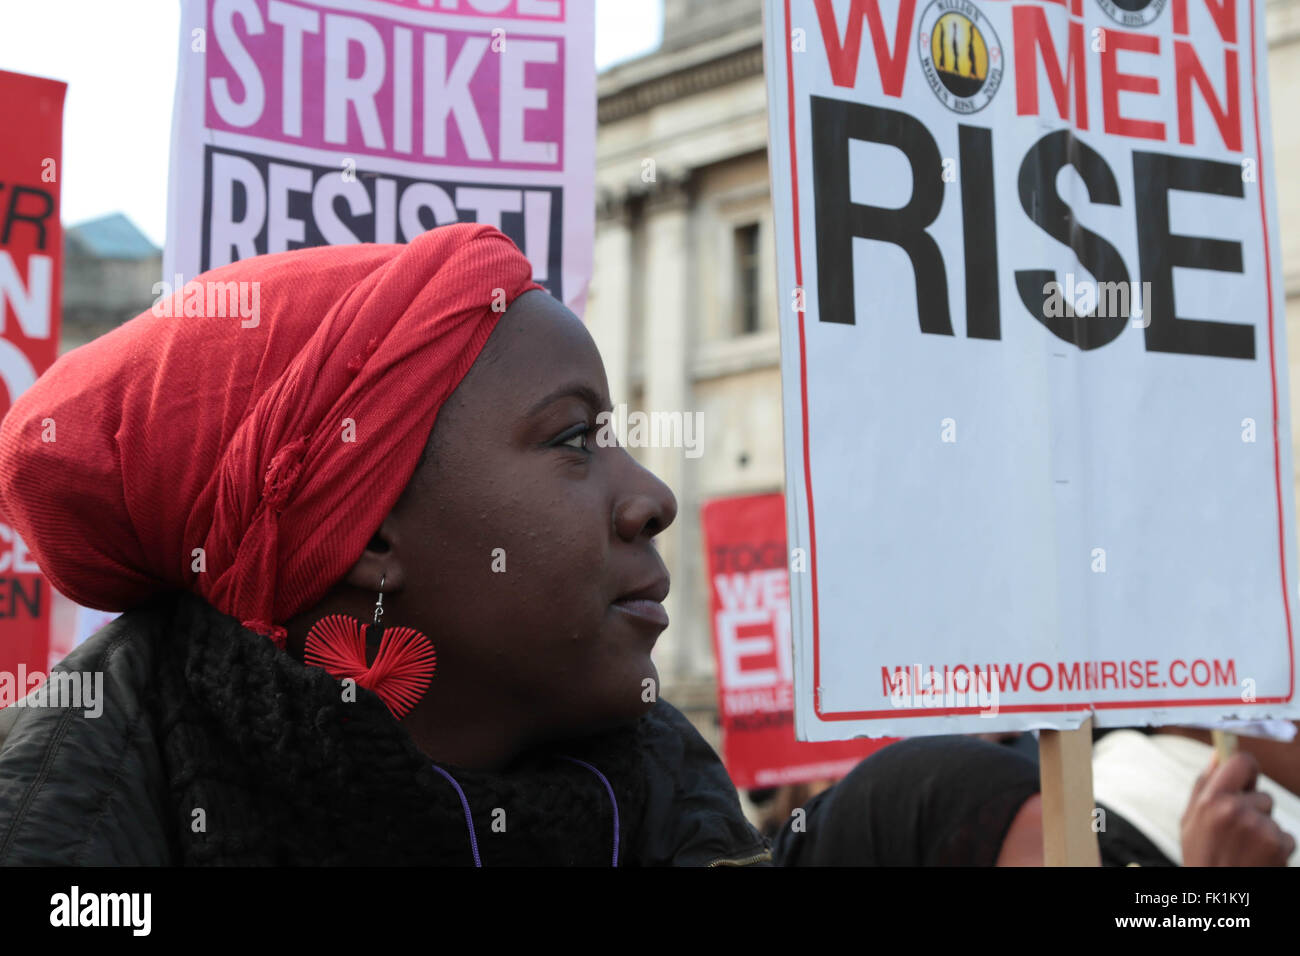 Londres, Reino Unido. 5 de marzo de 2016. Las mujeres sostienen la pancarta,s como miles de marzo a través de Londres para poner fin a la violencia de los hombres contra las mujeres. Crédito: Thabo Jaiyesimi/Alamy Live News Foto de stock